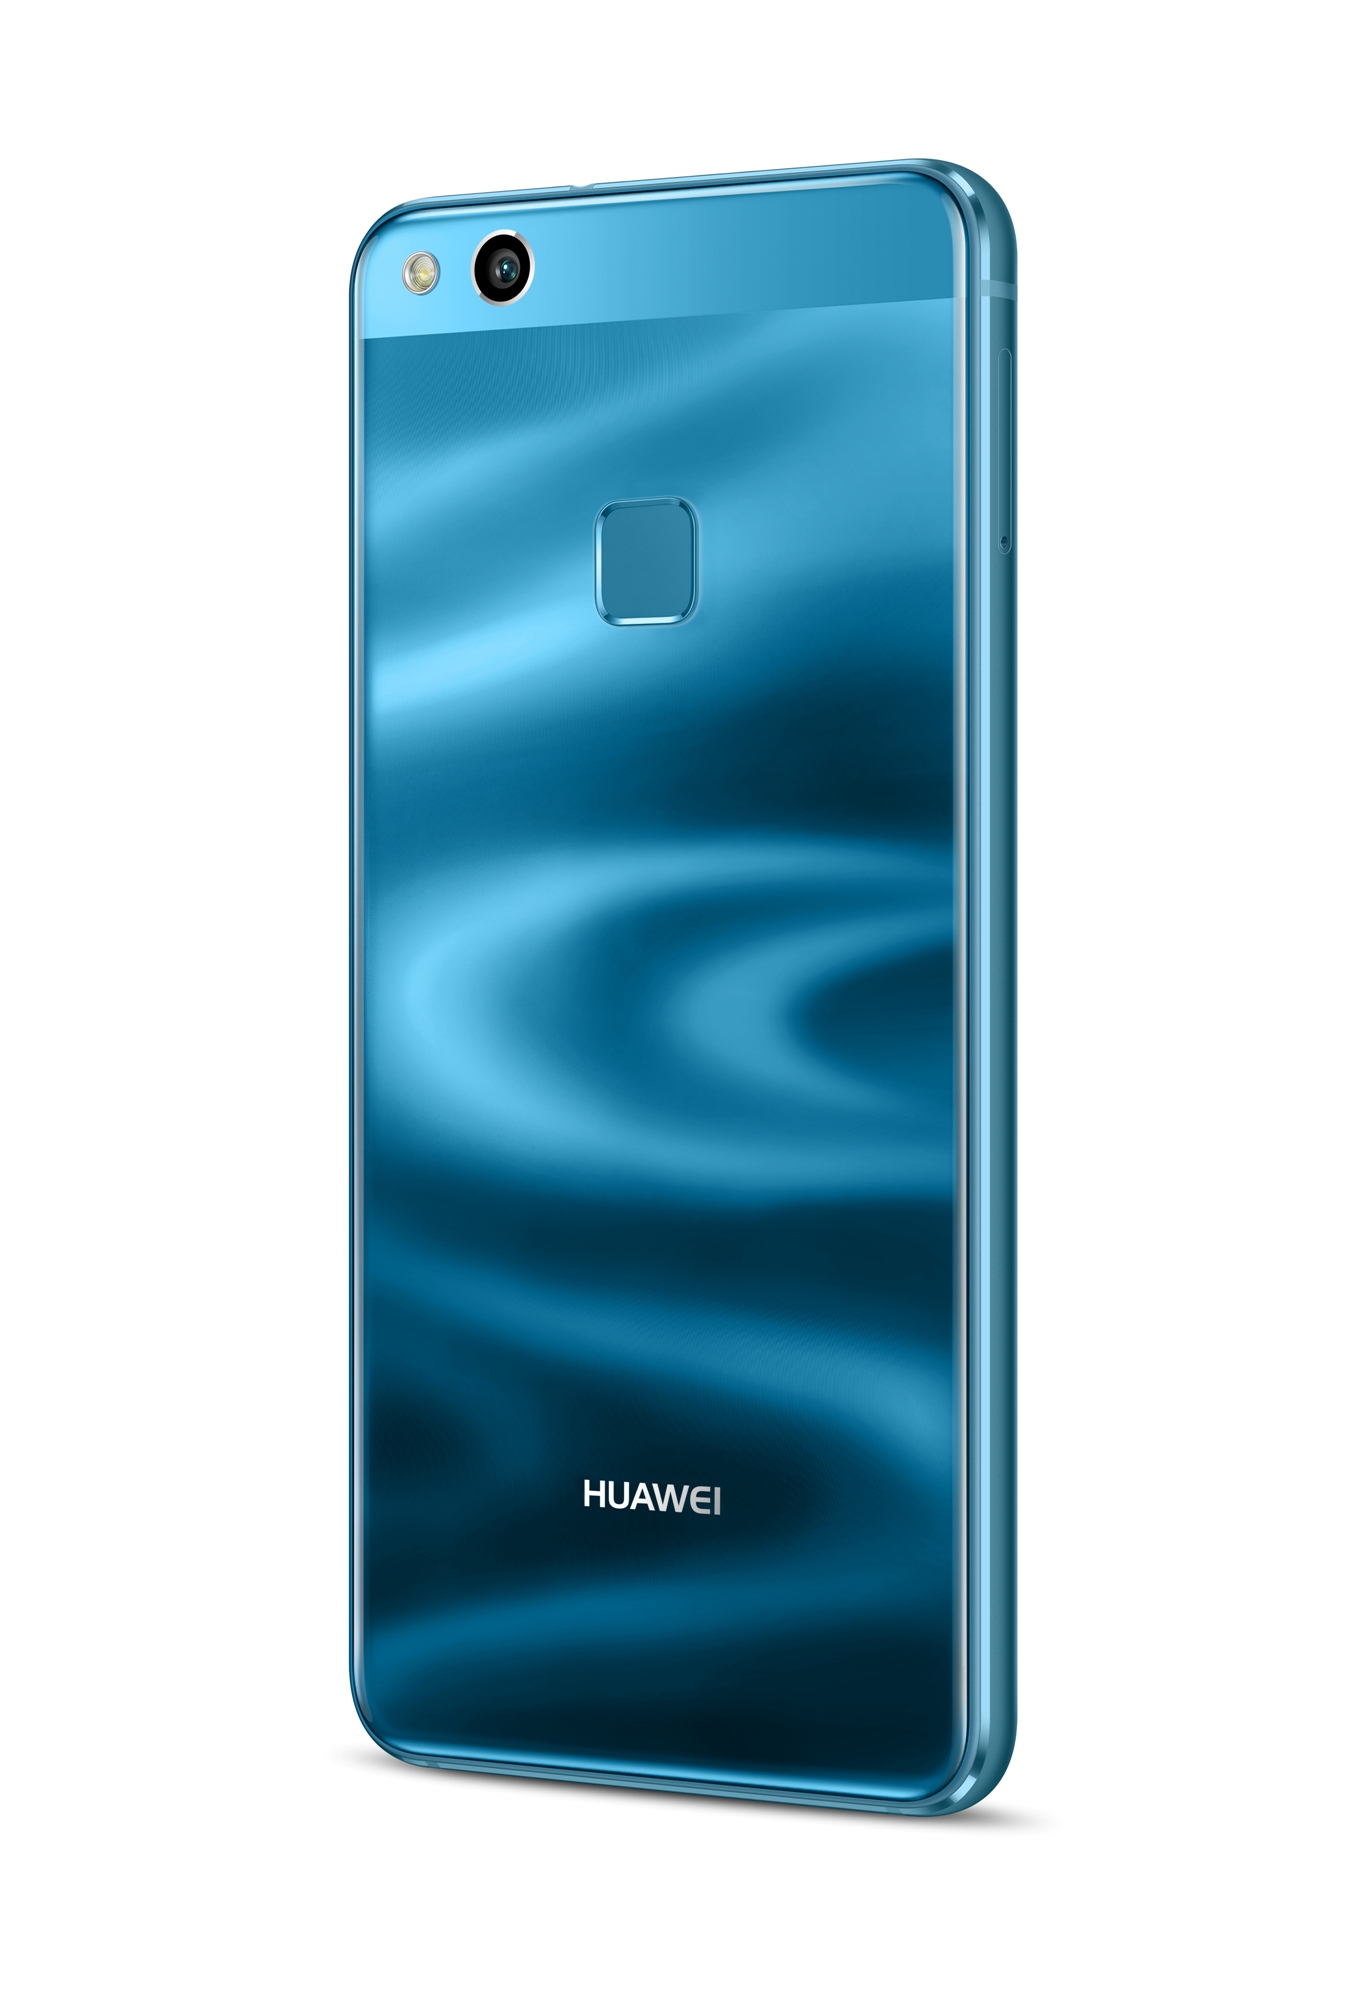 Huawei 3 32. Huawei p10 Lite. Huawei p10 Lite 32gb. Huawei p10 Lite 4/32gb. Huawei p10 Lite синий.